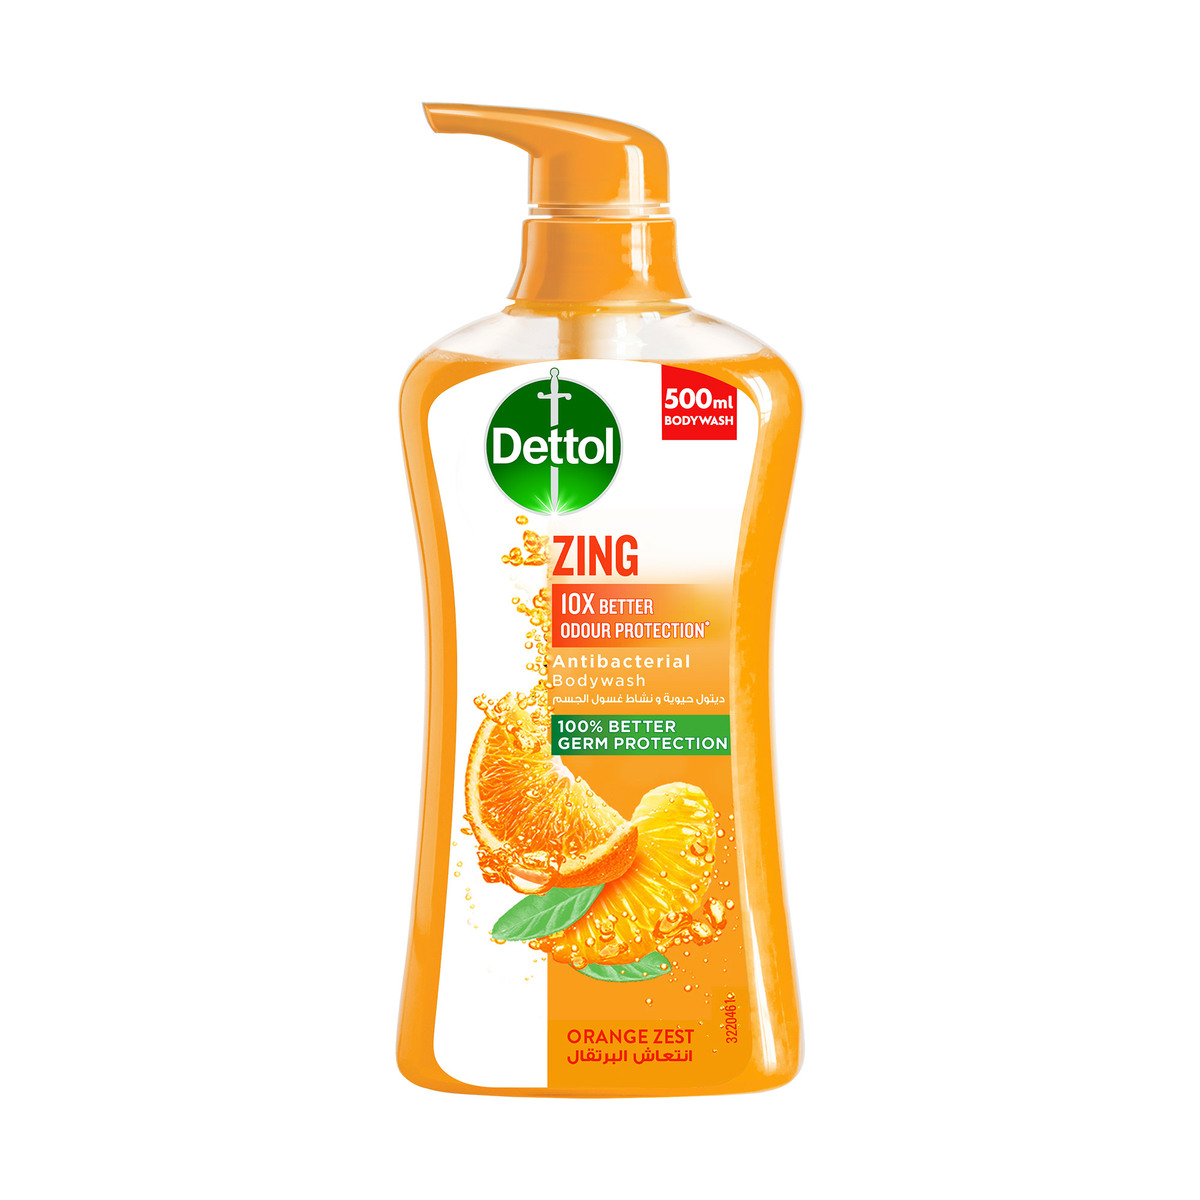 Dettol Zing Orange Zest Antibacterial Body Wash 500 ml